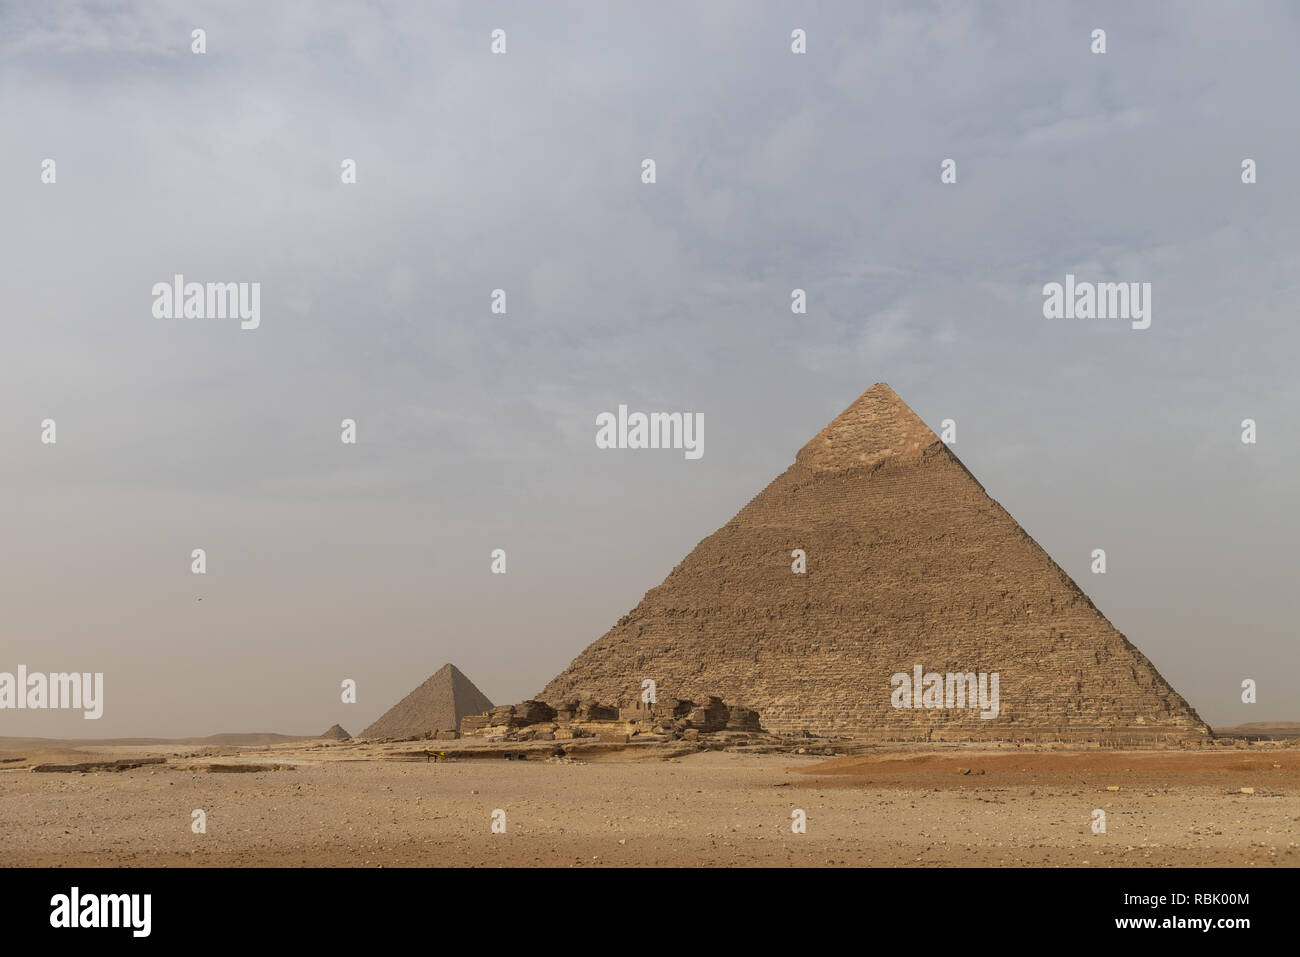 La pyramide de Khéphren de Khafré ou[1] هرم خفرع‎ (arabe : translit. ḵafraʿ, haram, IPA : [haram] xafraʕ) est le deuxième plus haut et deuxième plus grande de t Banque D'Images